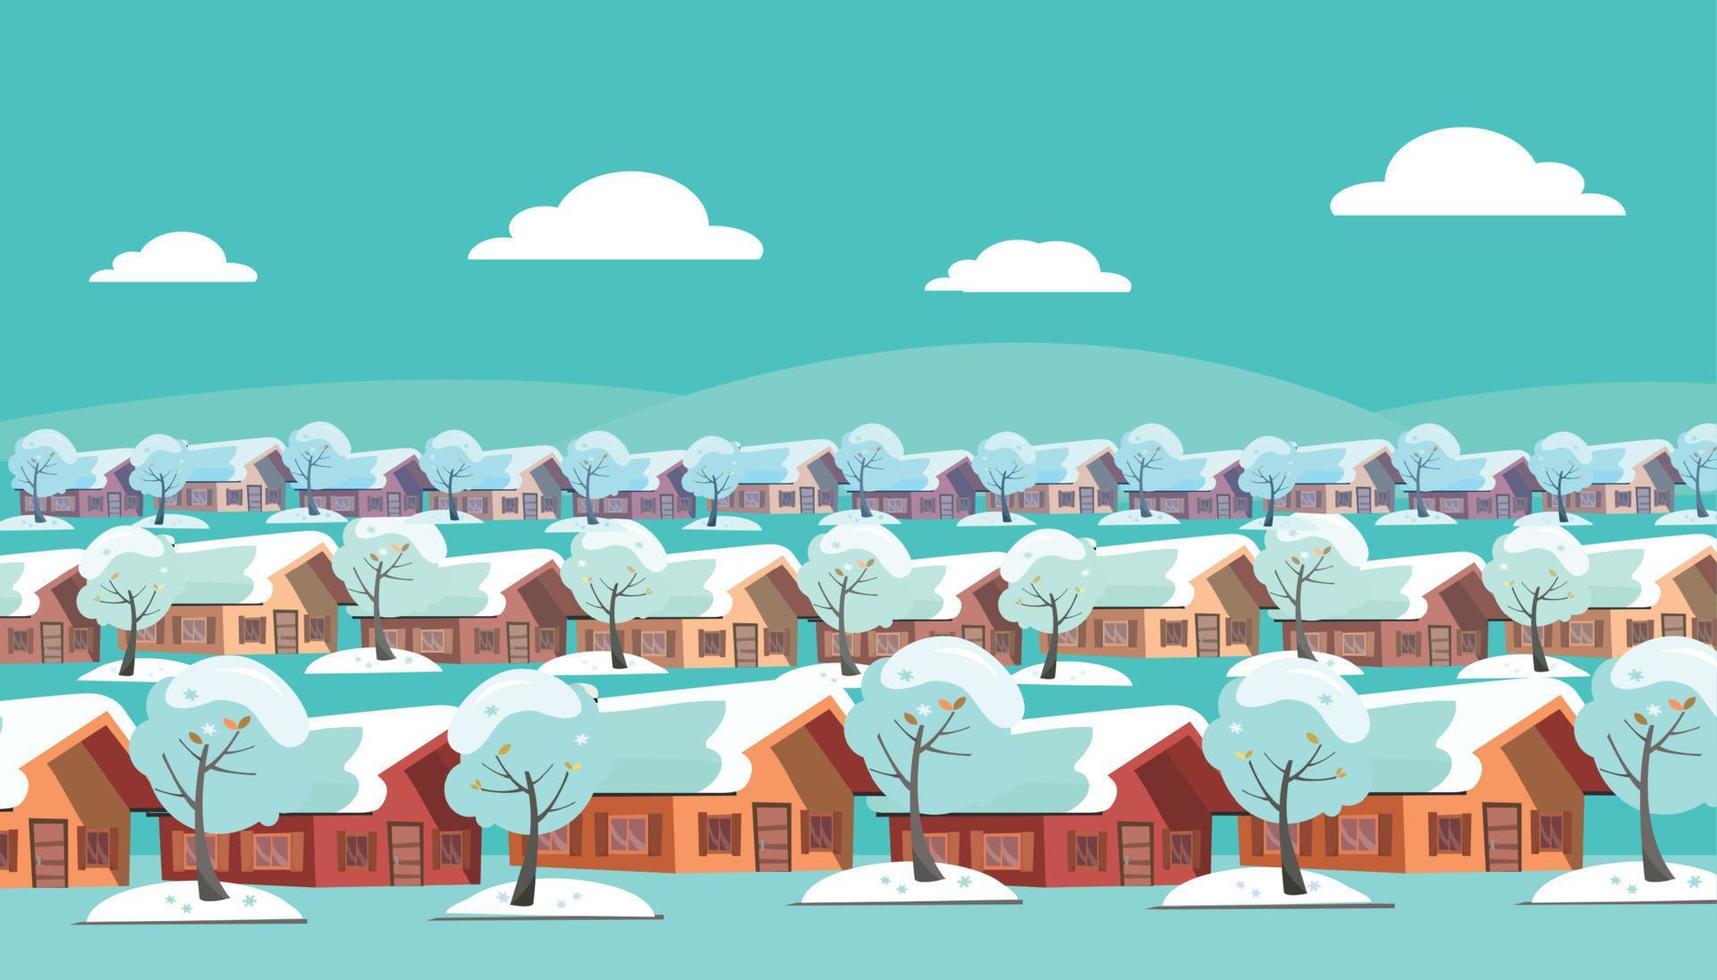 Panoramalandschaft eines einstöckigen Vorstadtdorfes. gleiche Häuser befinden sich in drei Reihen. Draußen herrscht Winterschneewetter und schneebedeckte Bäume. flache Cartoon-Stil-Vektor-Illustration. vektor